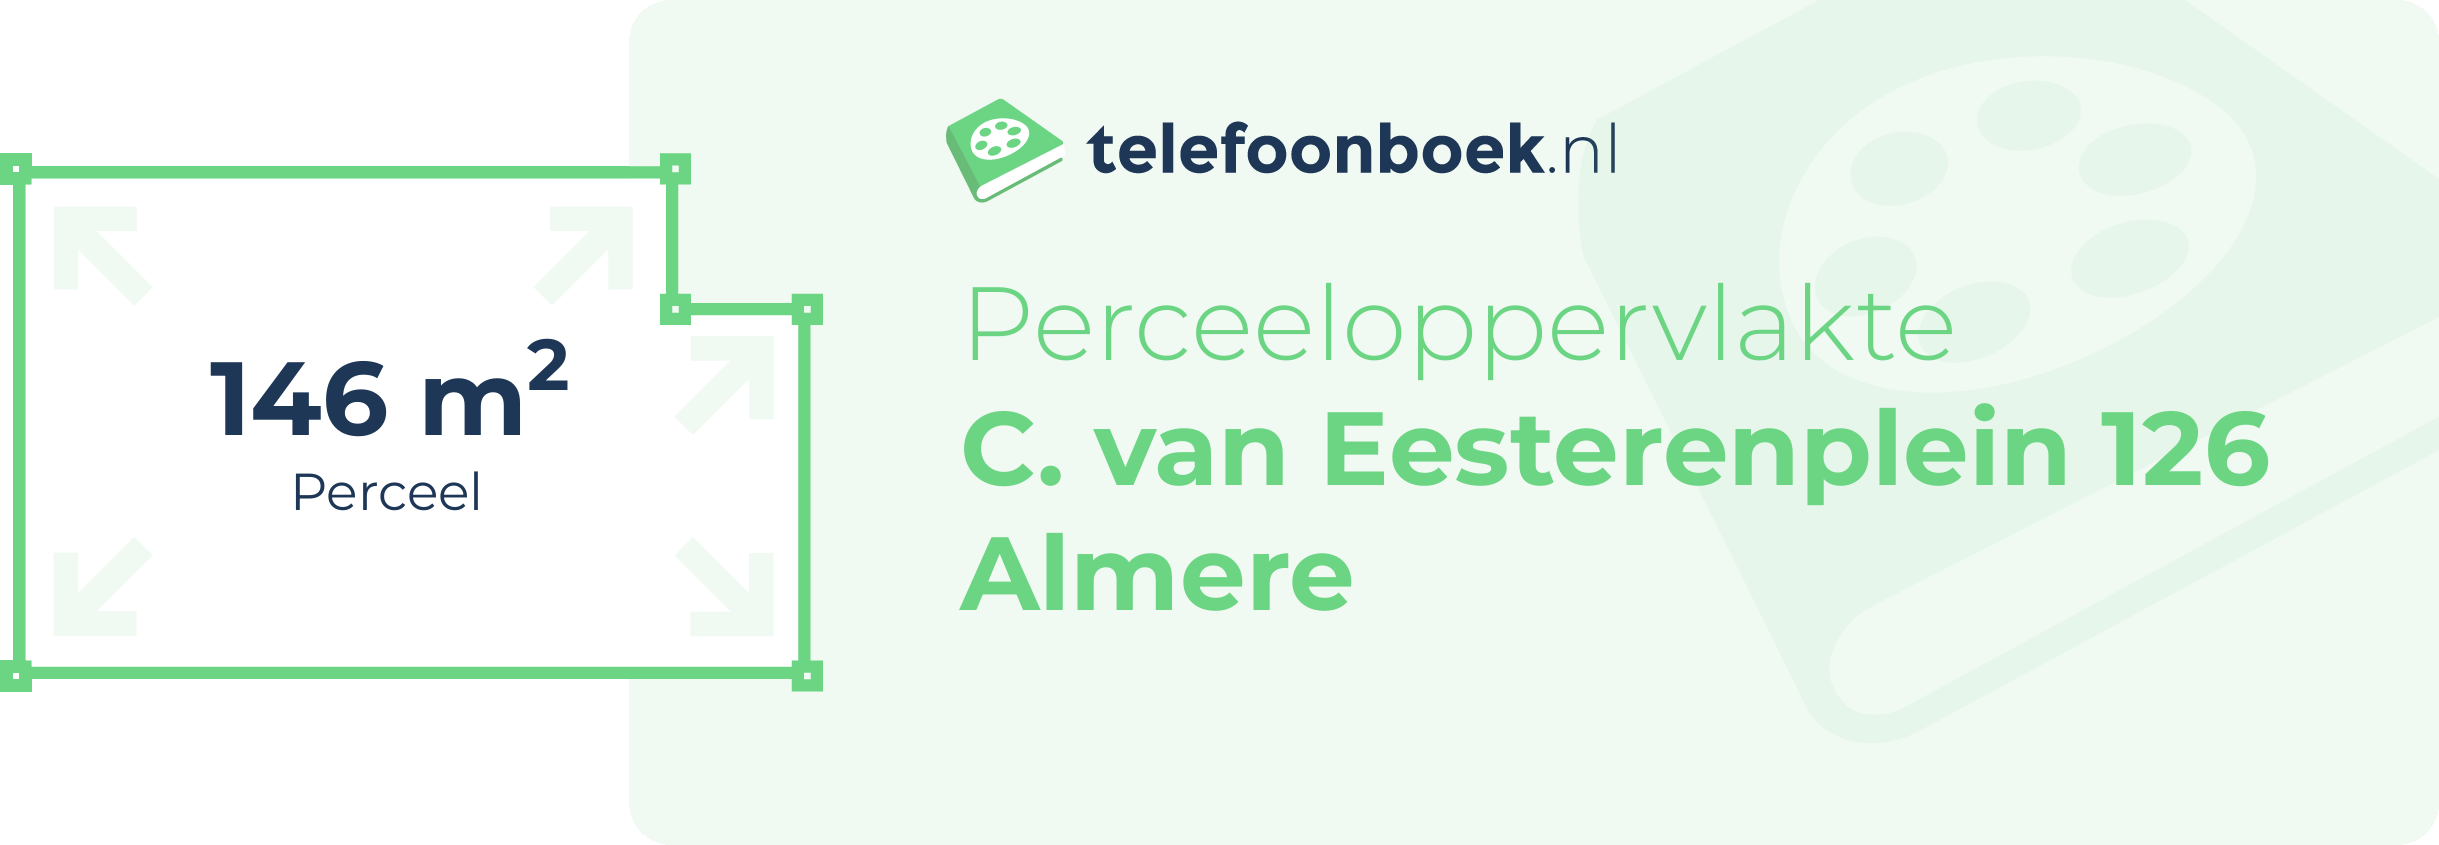 Perceeloppervlakte C. Van Eesterenplein 126 Almere